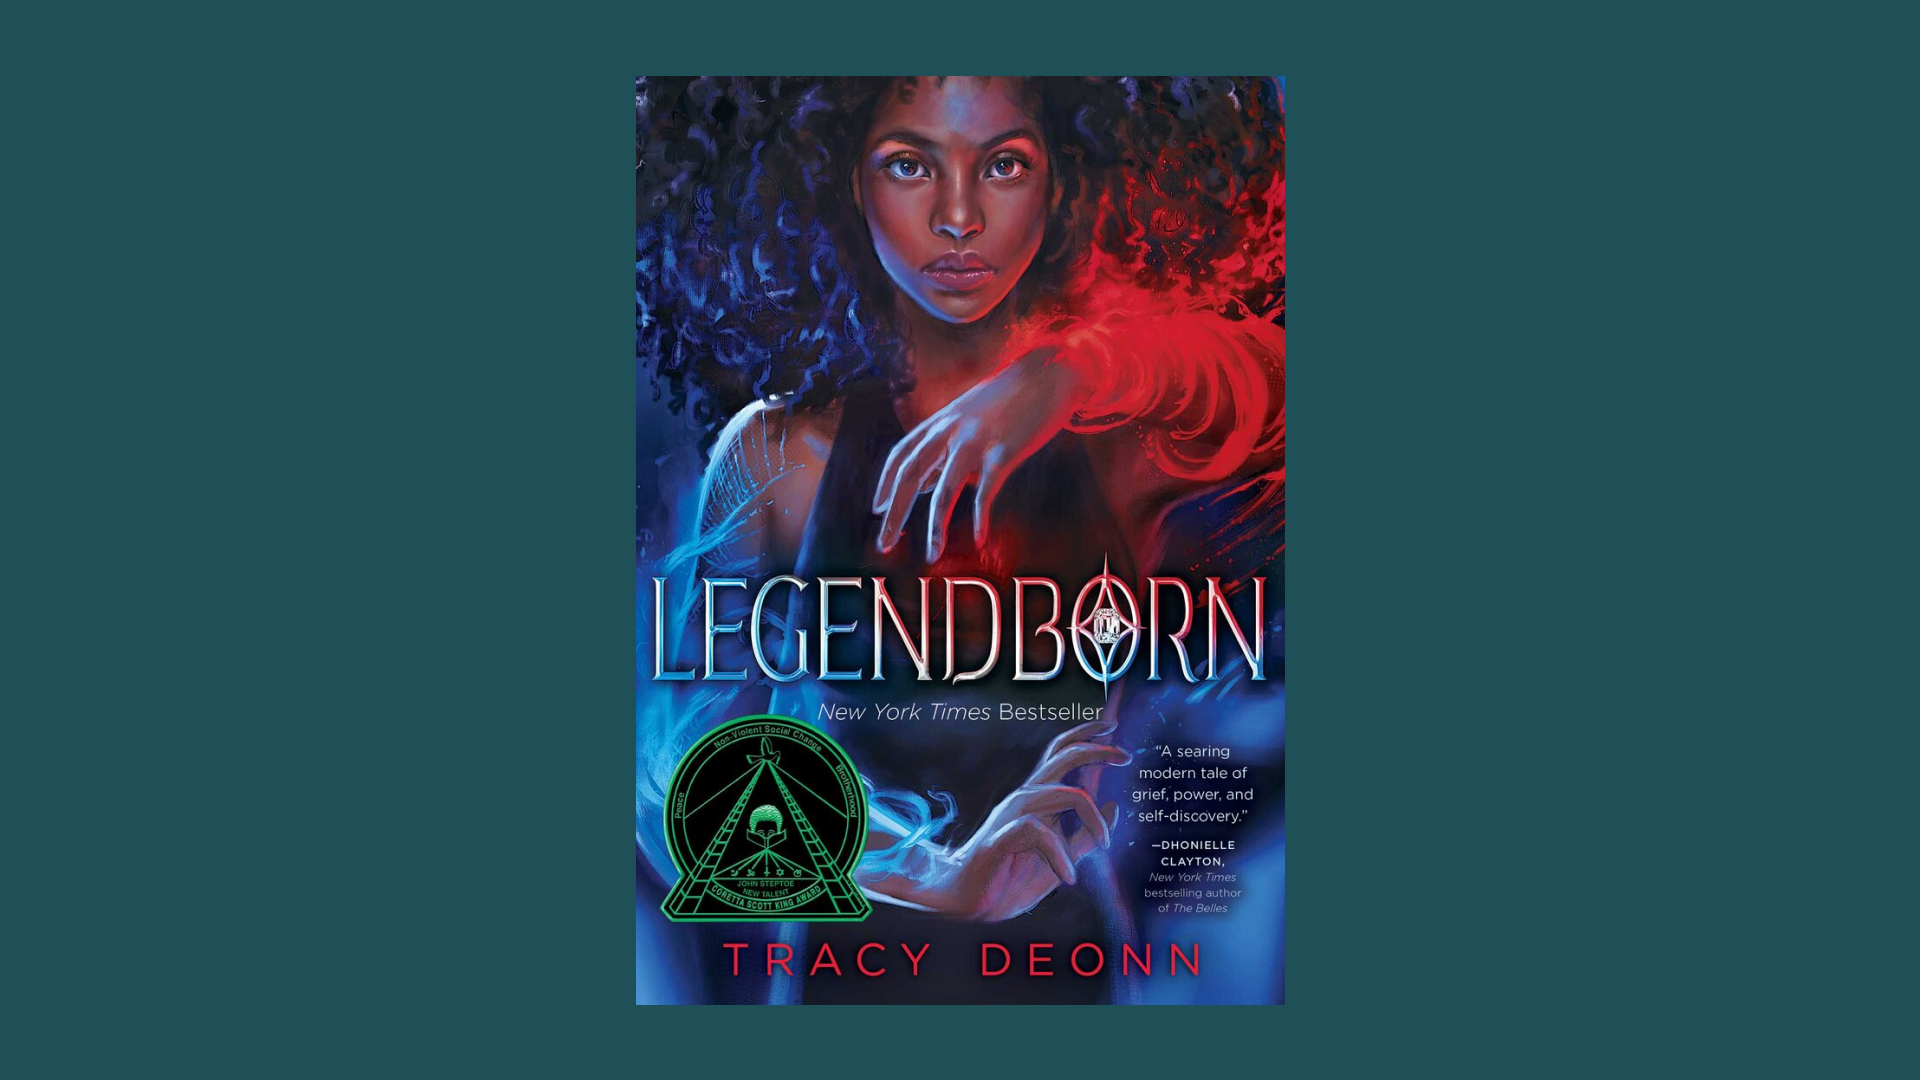 “Legendborn” by Tracy Deonn